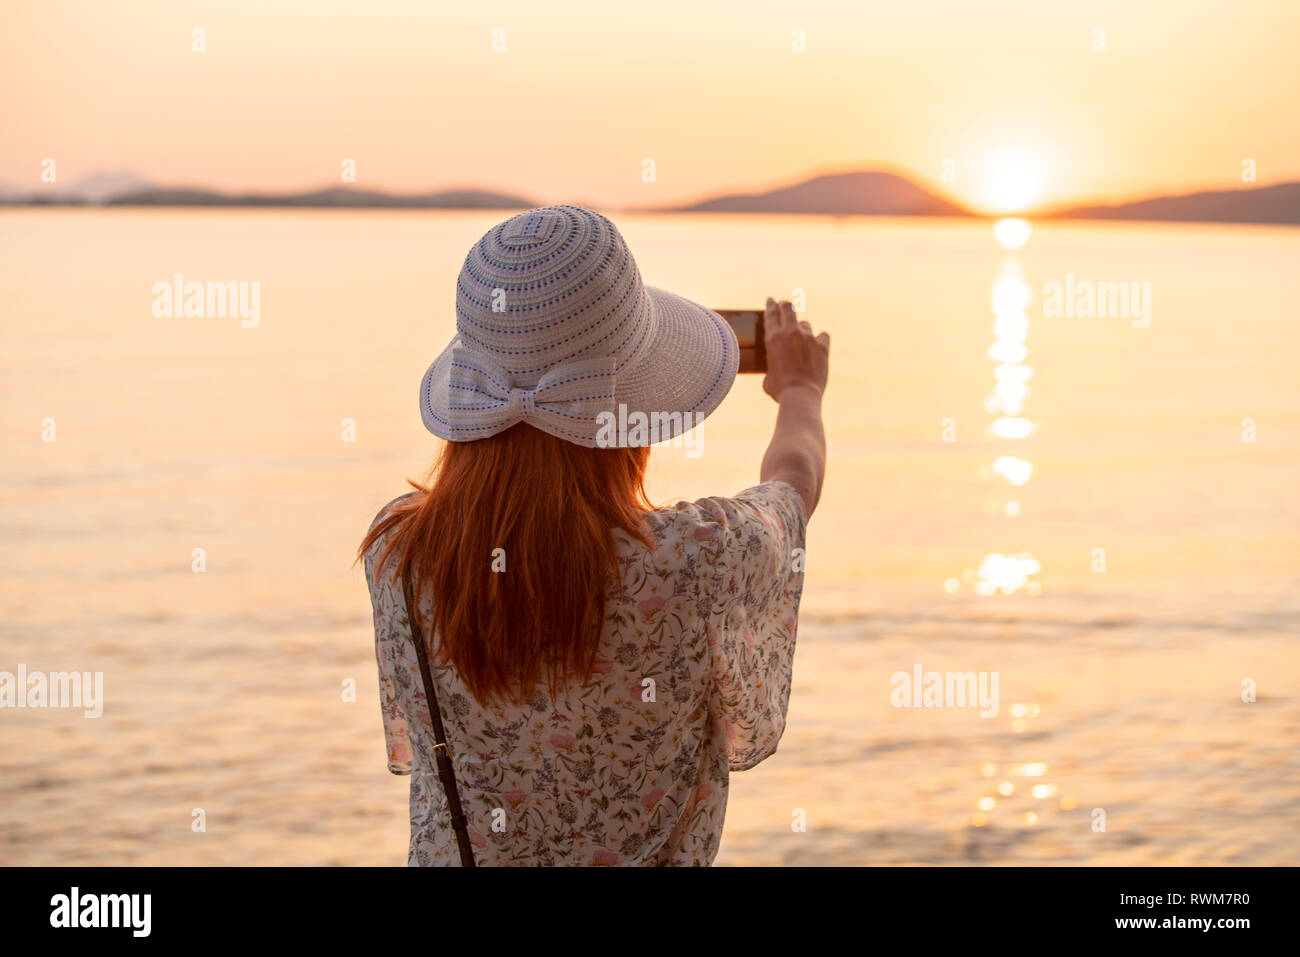 Tourist taking photograph of sunset on beach Stock Photo